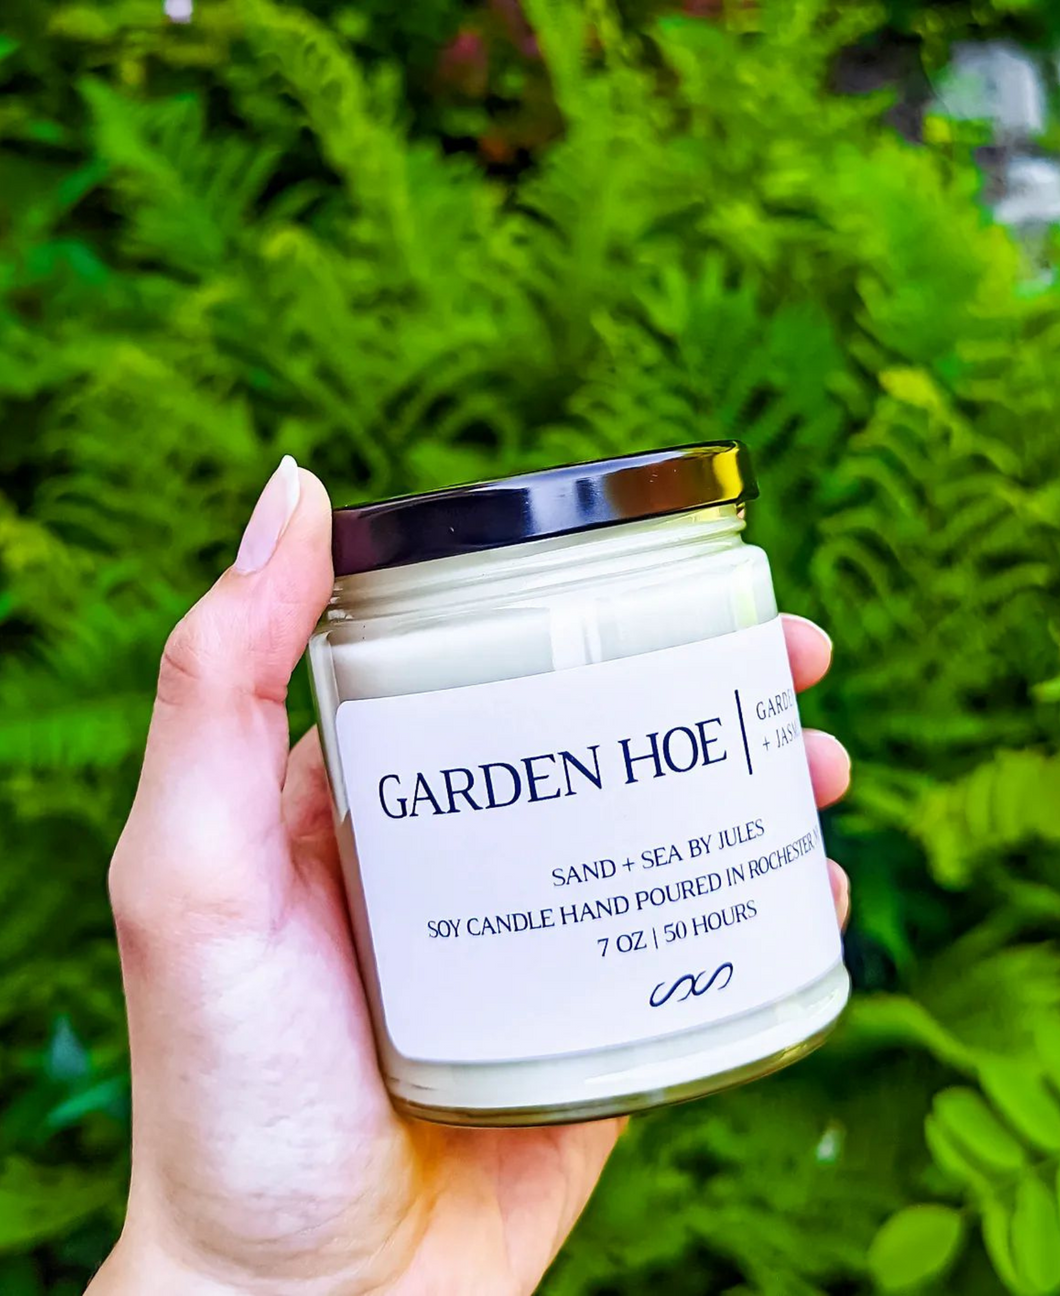 Garden Hoe: Gardenia + Jasmine